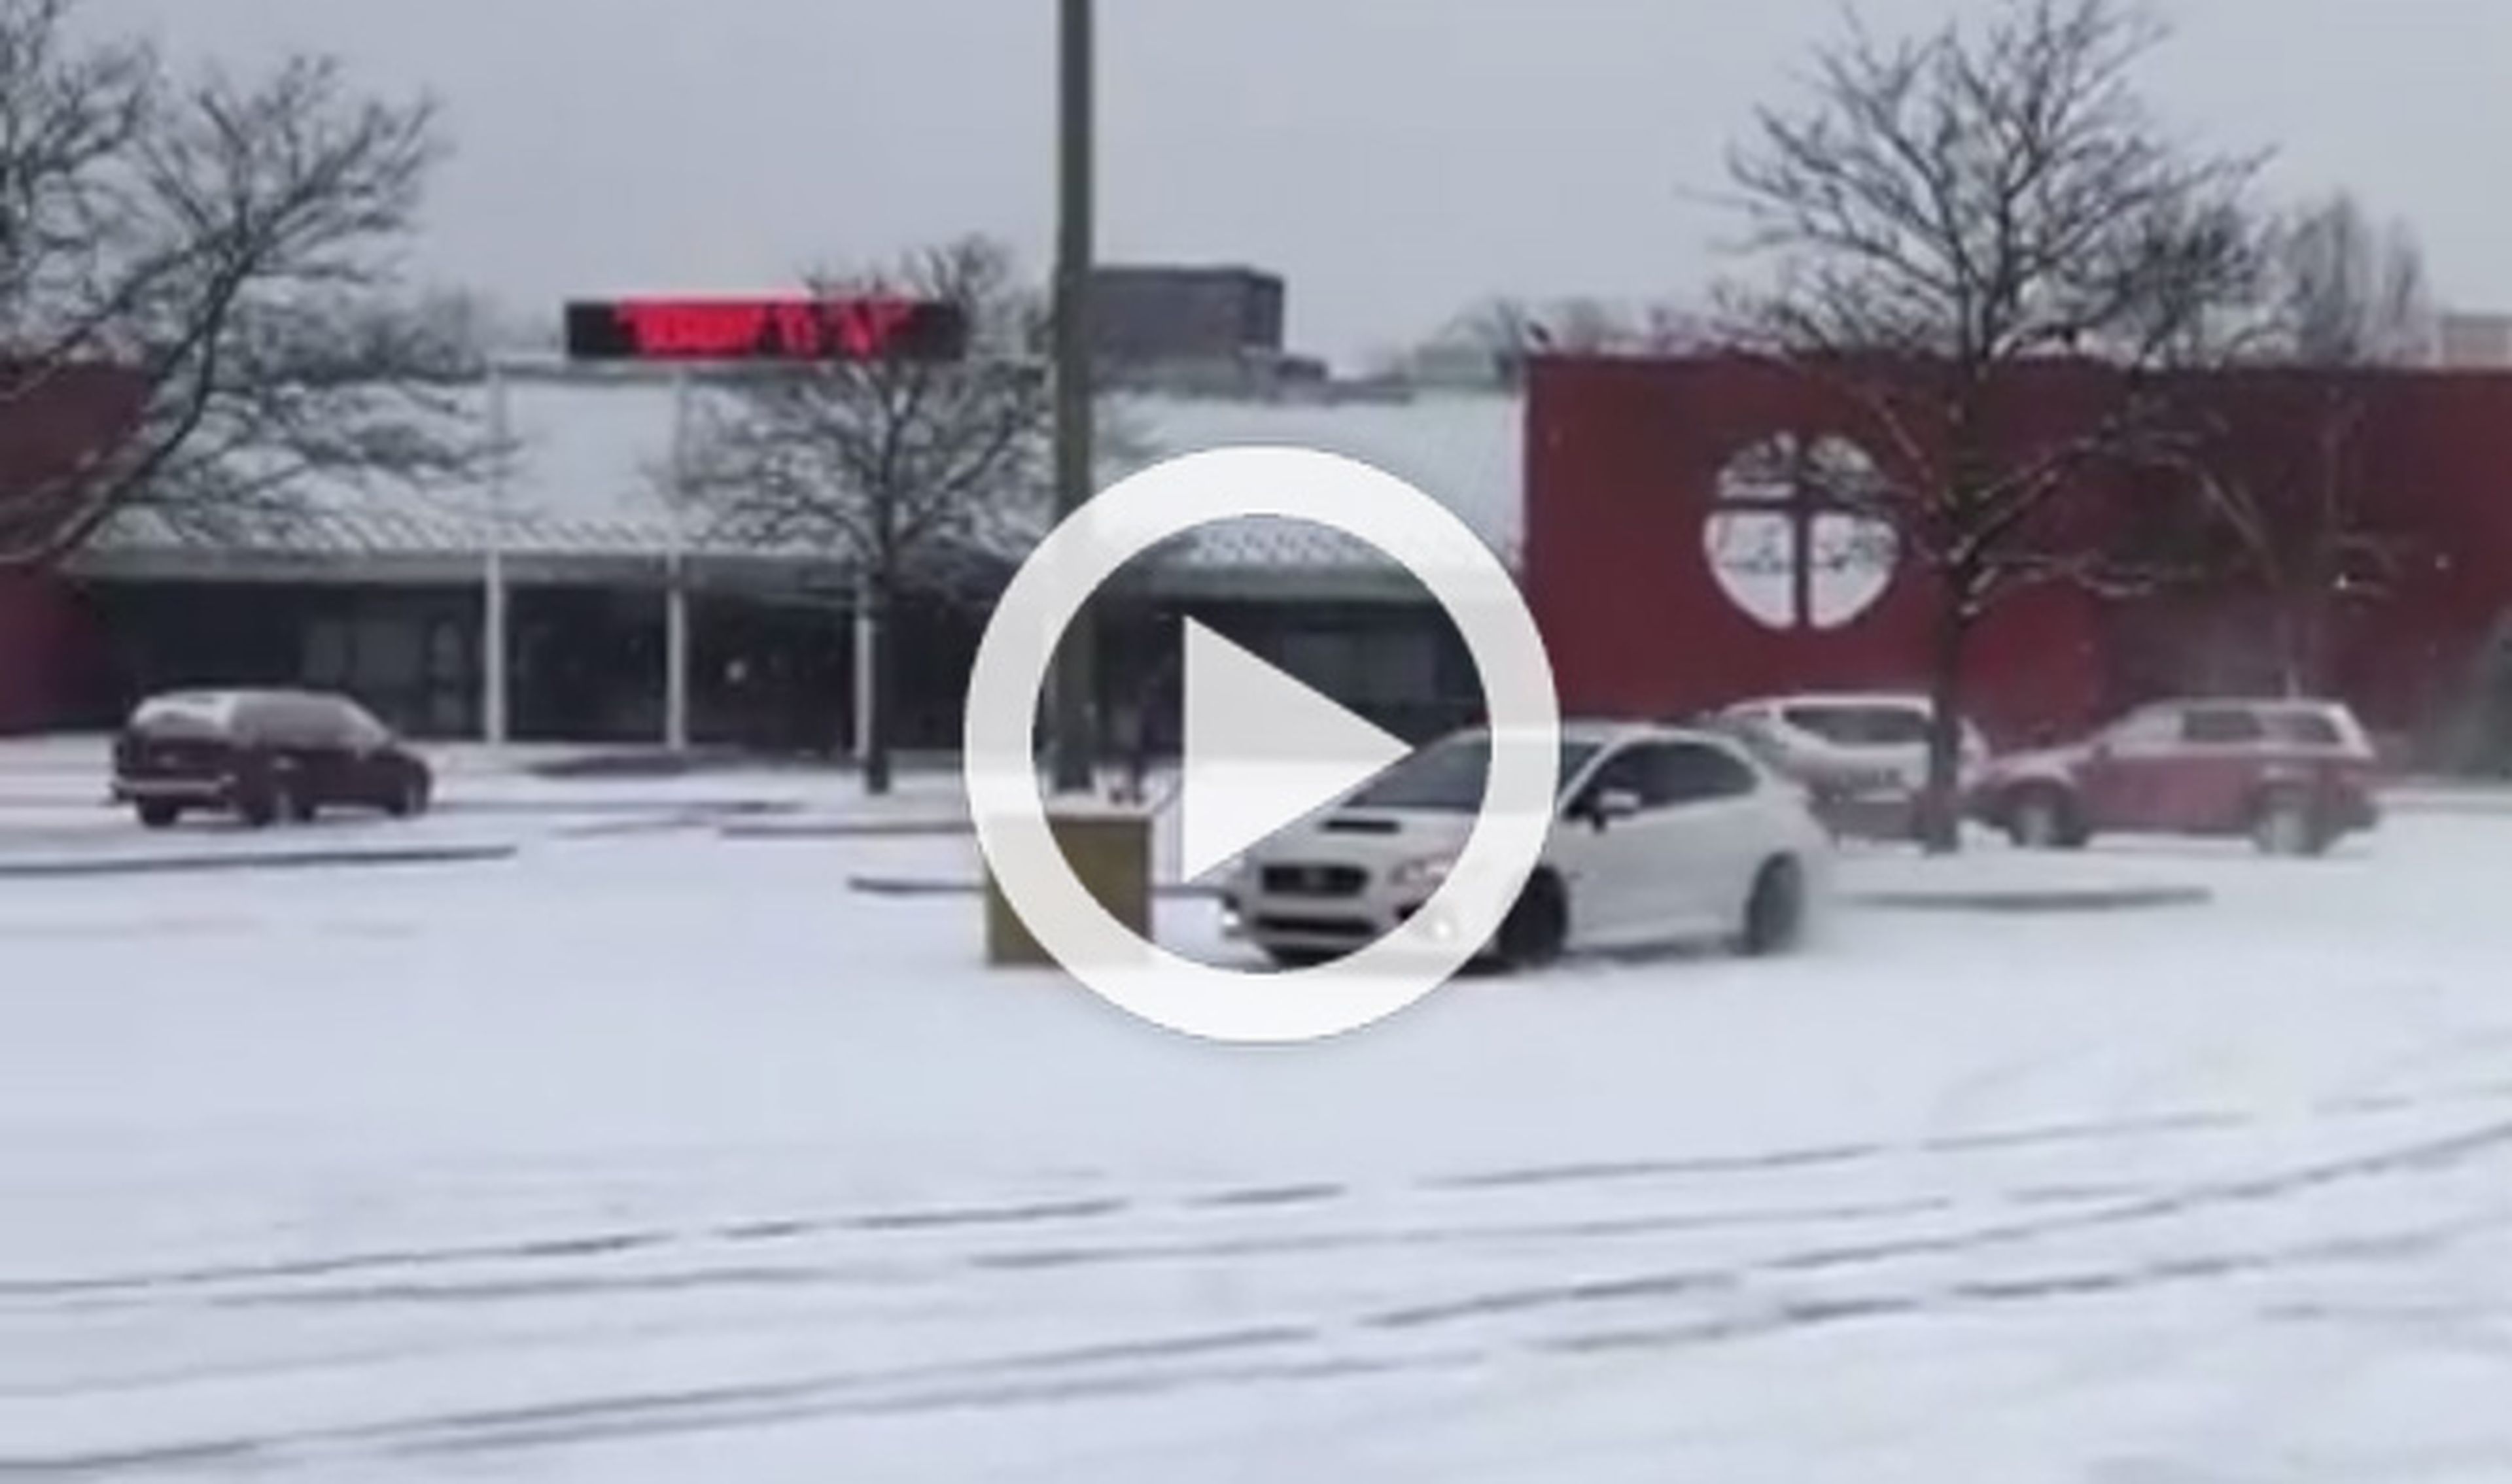 Derrapa en la nieve y choca con su Subaru WRX STI